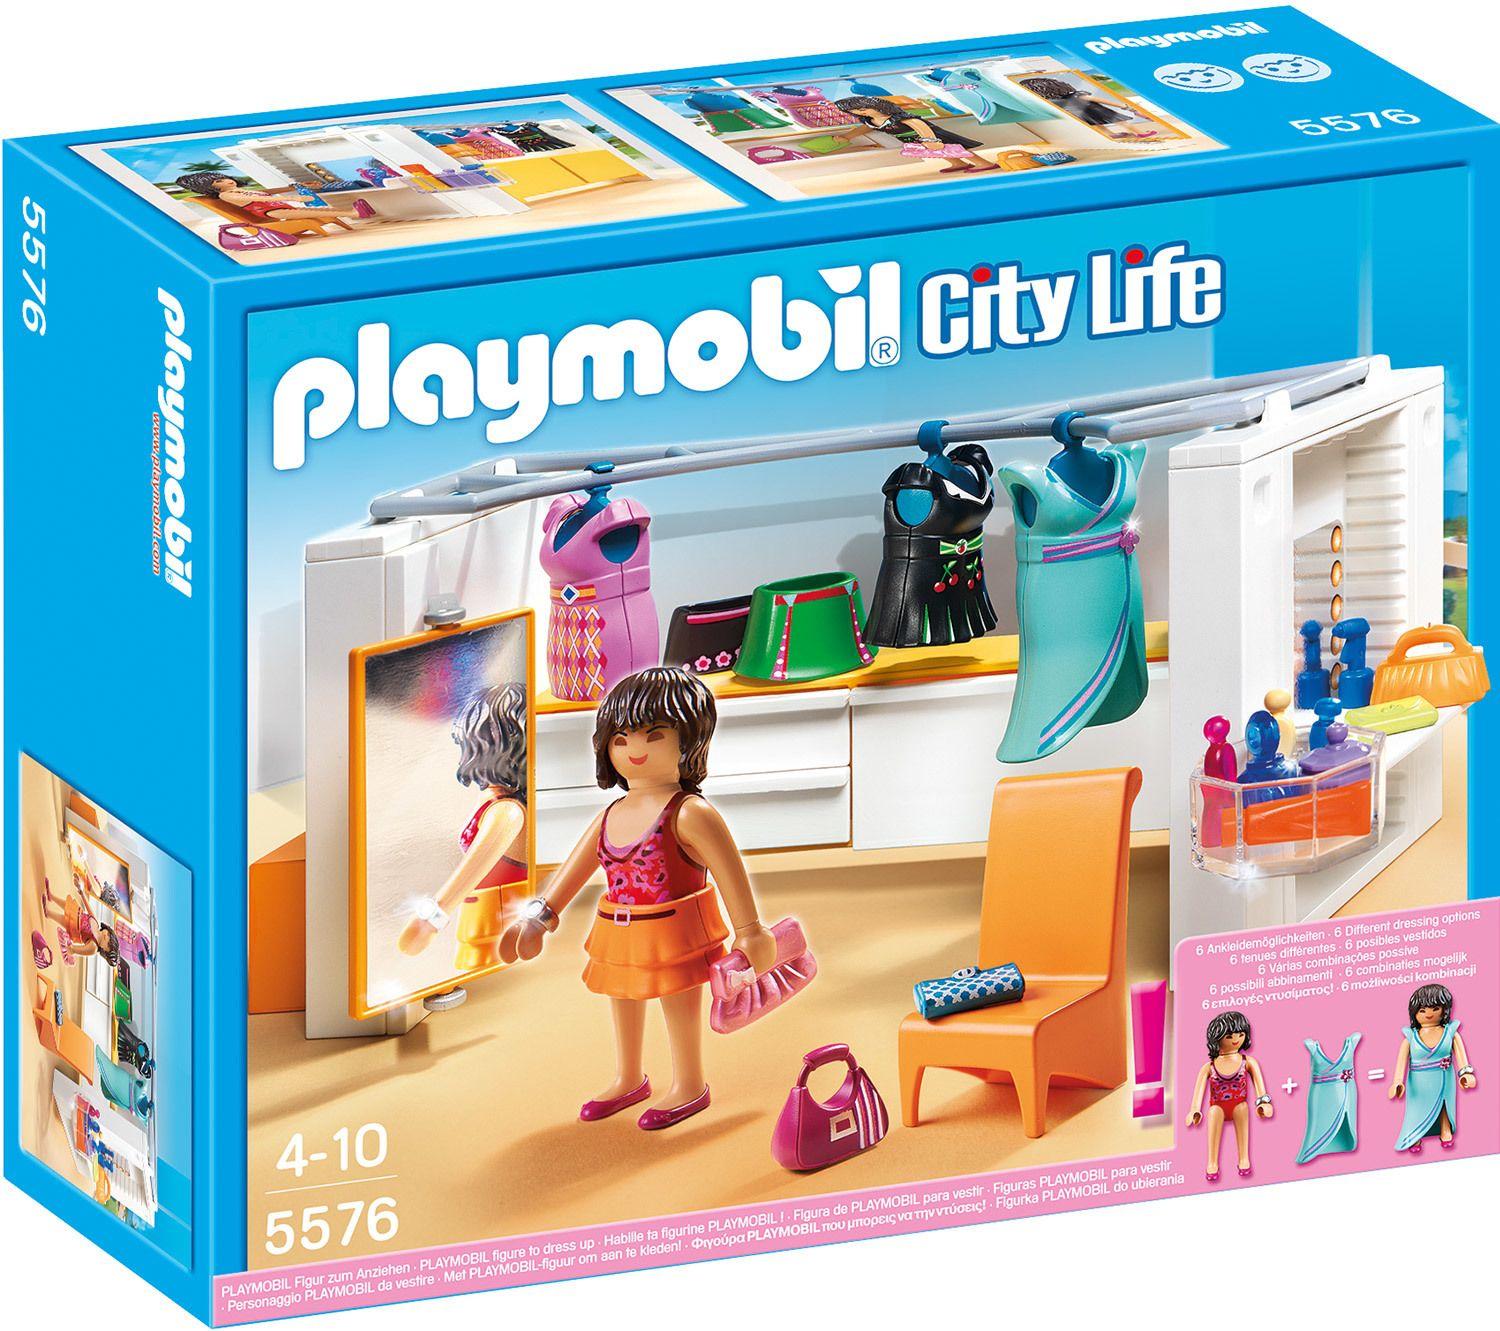 Playmobil Piscine avec terrasse, référence 5575, 19 pièces